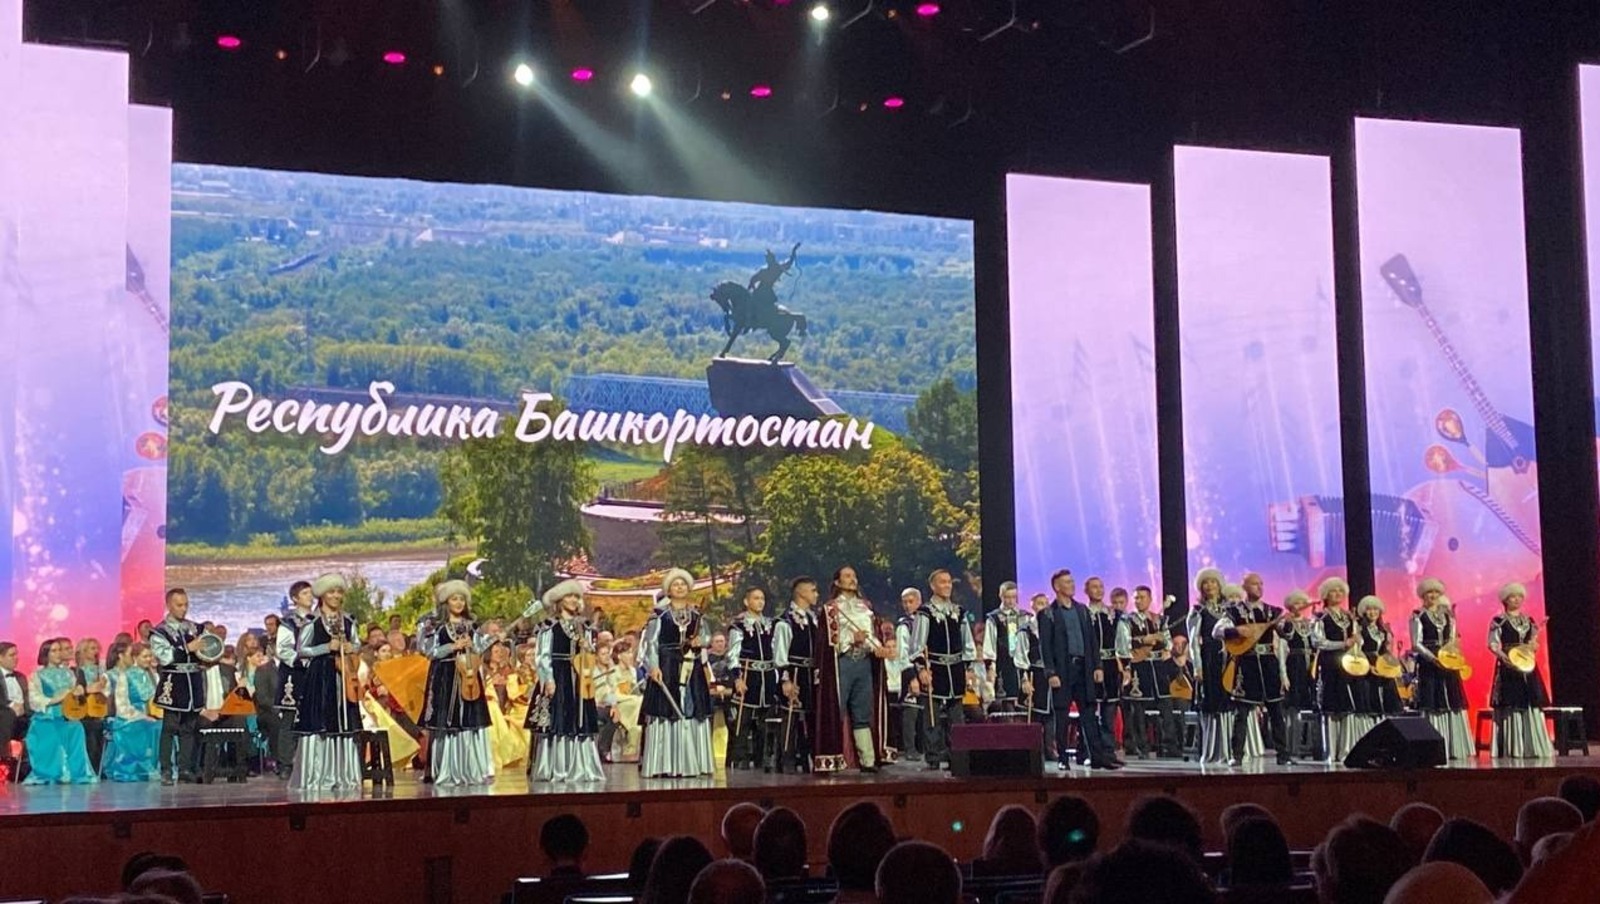 Национальный оркестр народных инструментов Башкирии впервые выступил на сцене Кремлевского дворца